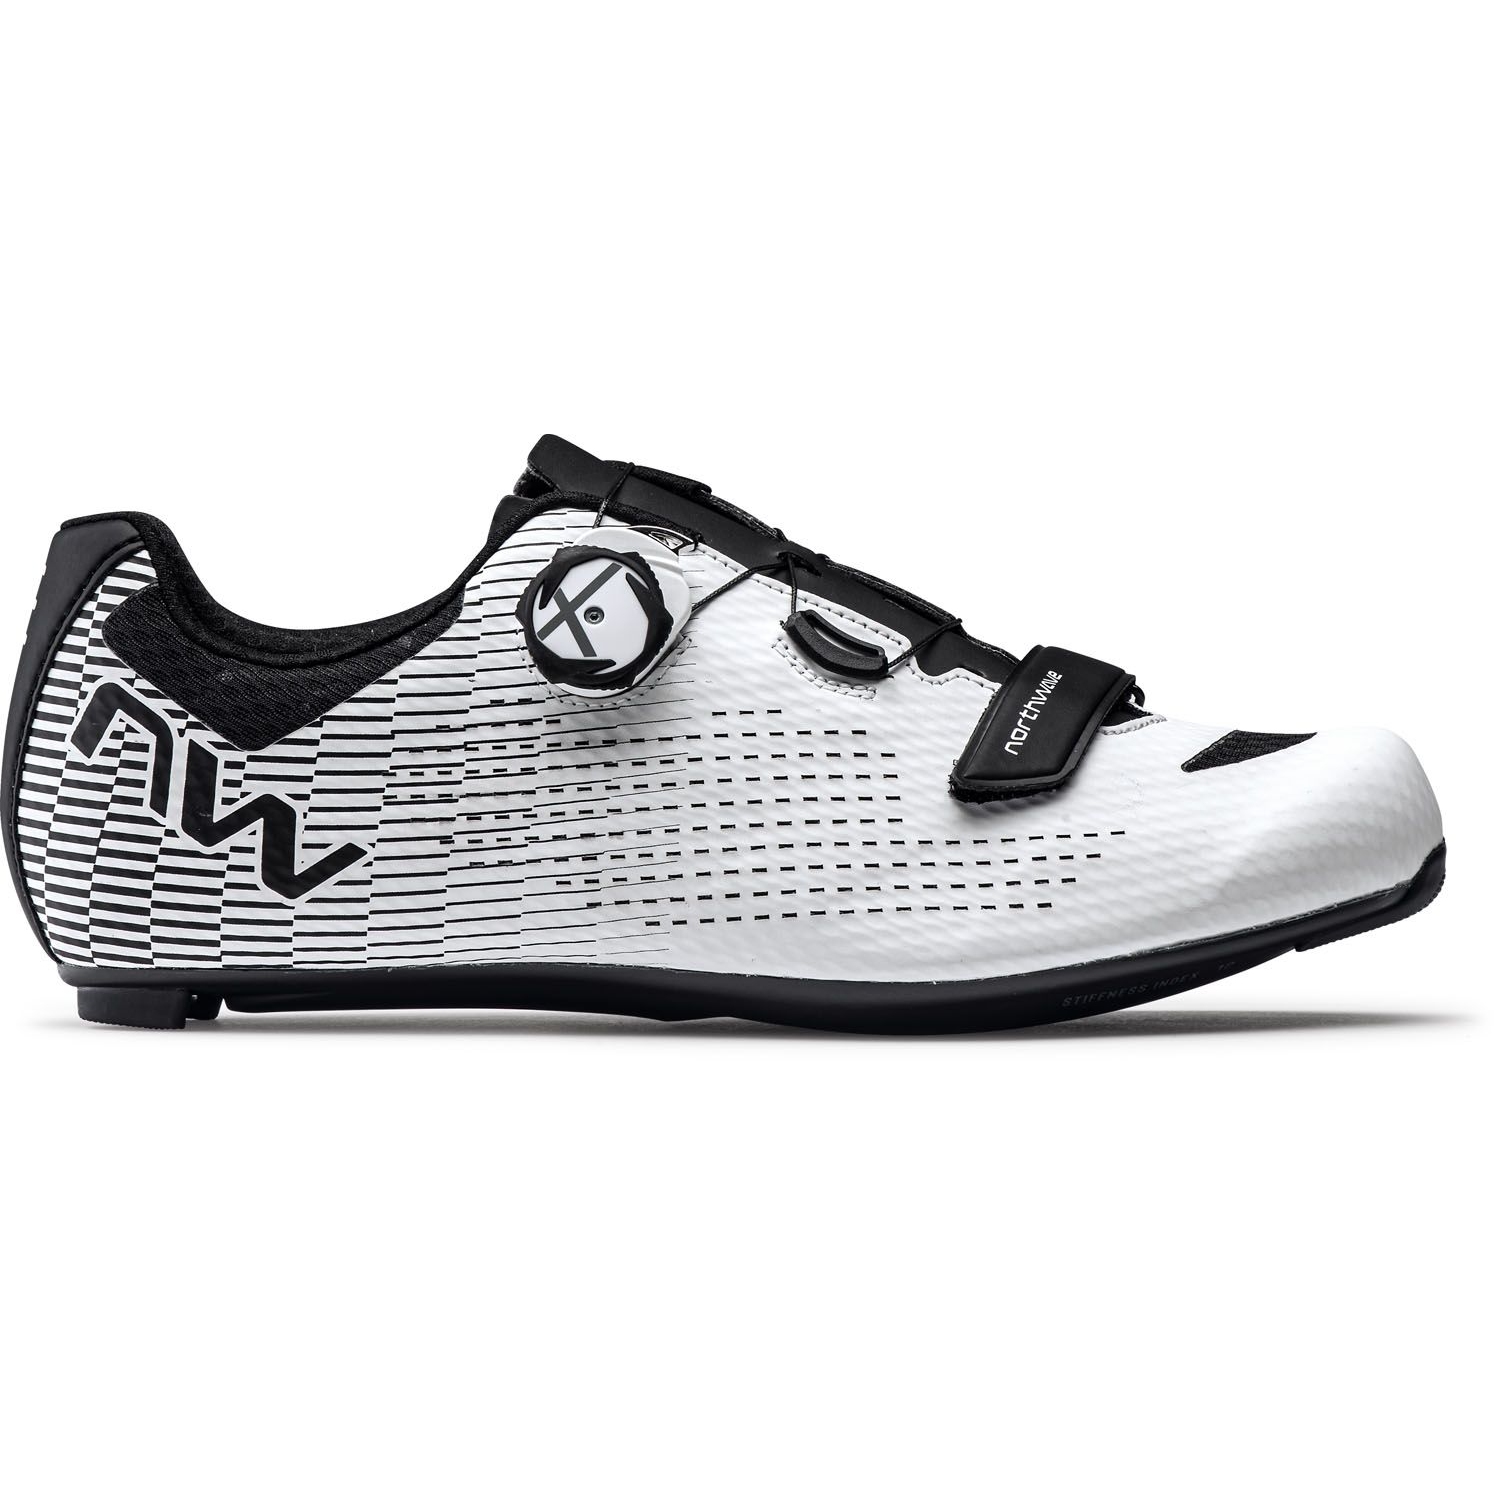 Zapatillas de ciclismo de carretera Wire 2 Carbon para mujer (42.0,  blanco/blanco), Blanco/Blanco